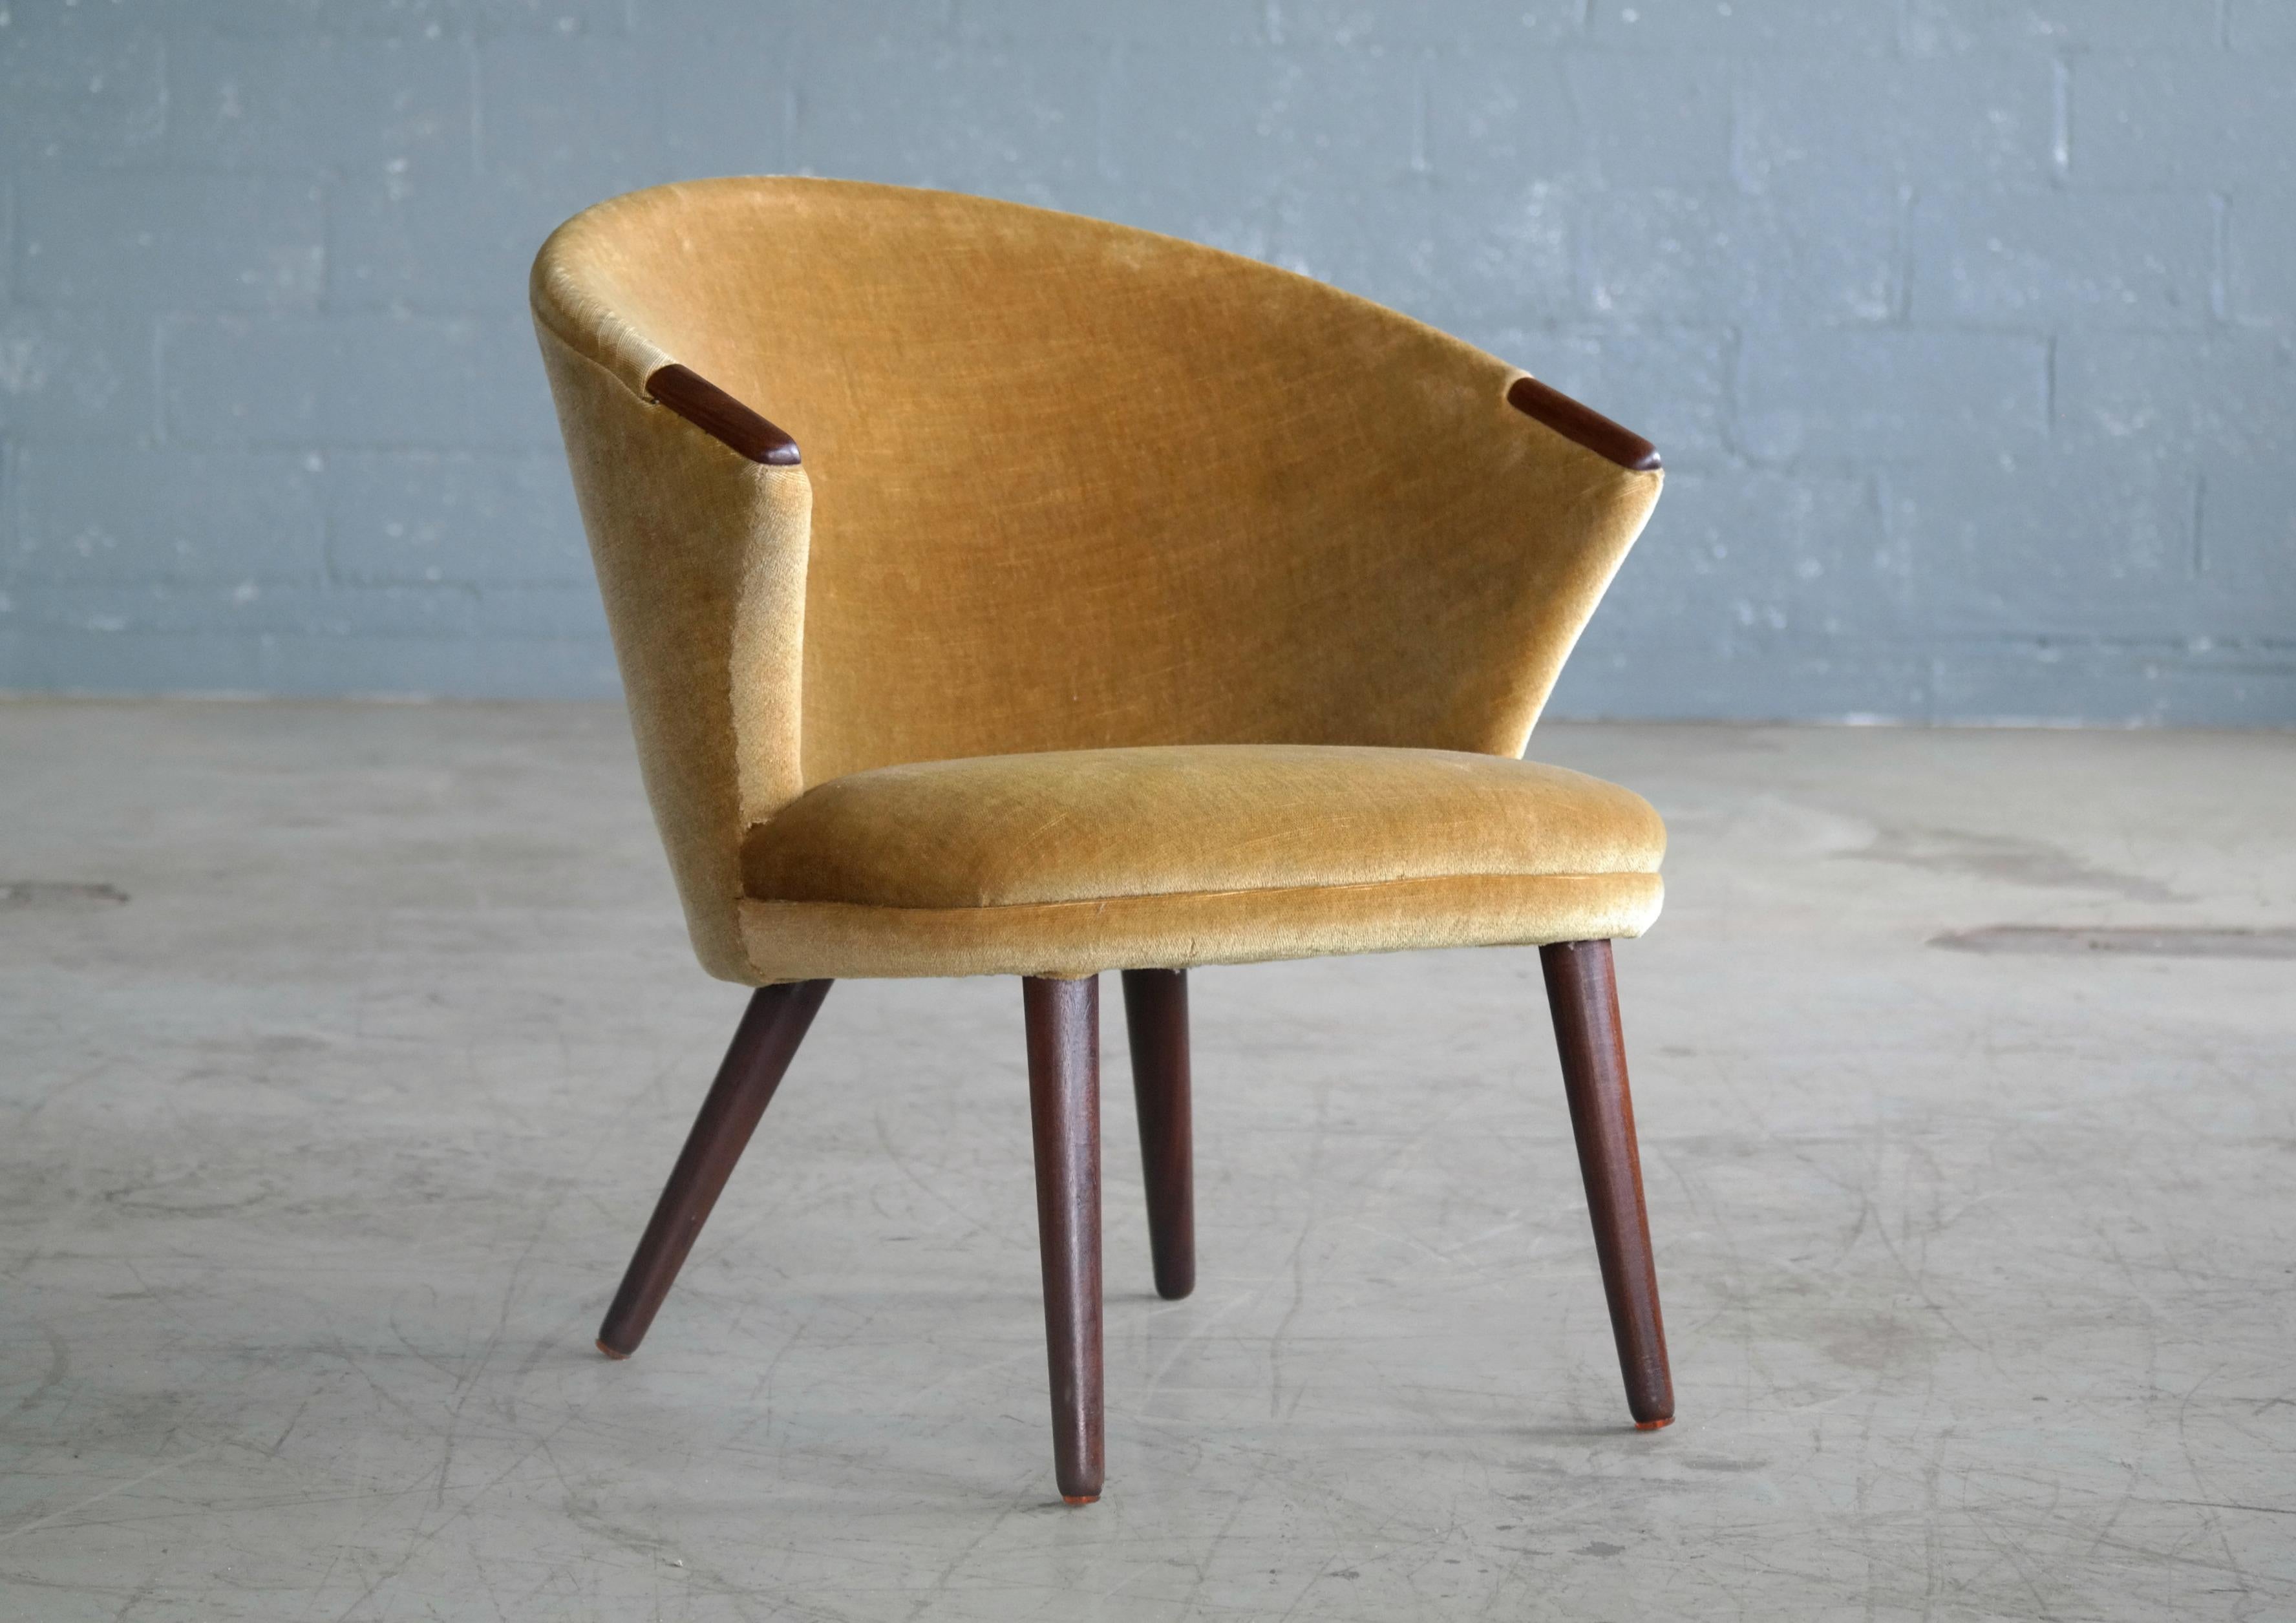 Scandinavian Modern Danish Midcentury Lounge Chair with Teak Accents Designed Bent Møller Jepsen